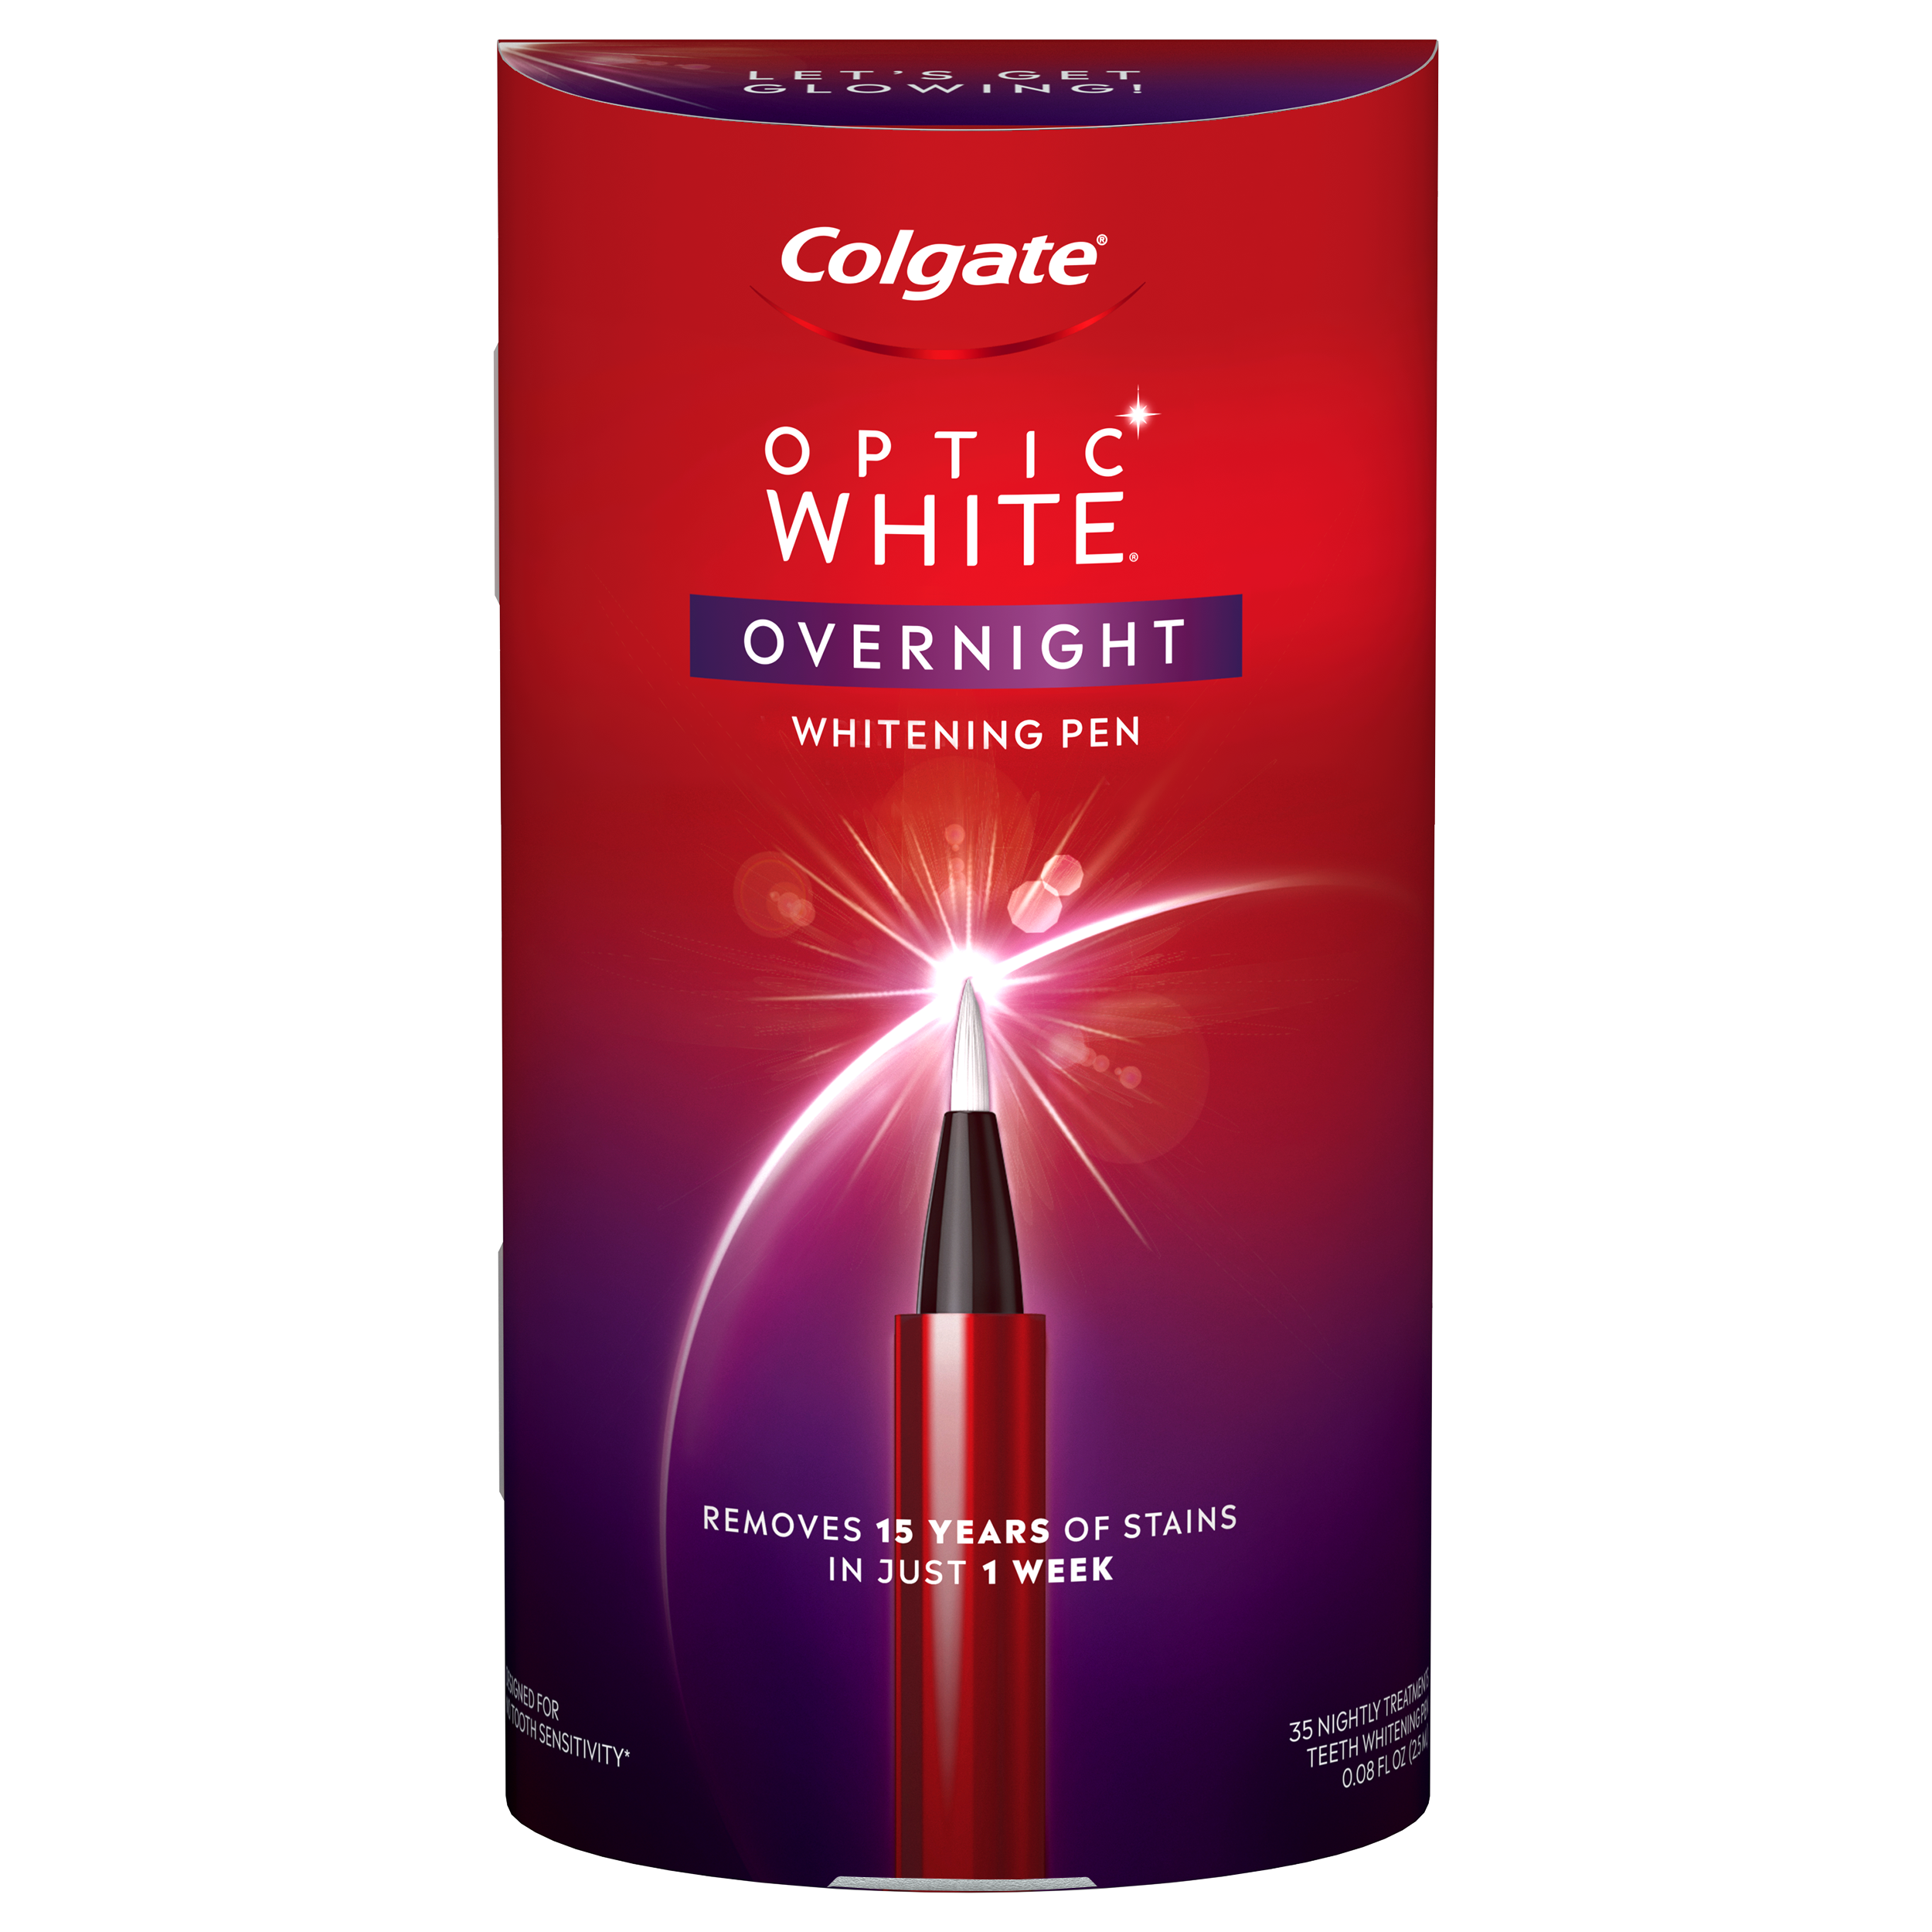 Colgate Optic White Overnight Whitening Pen Subscription